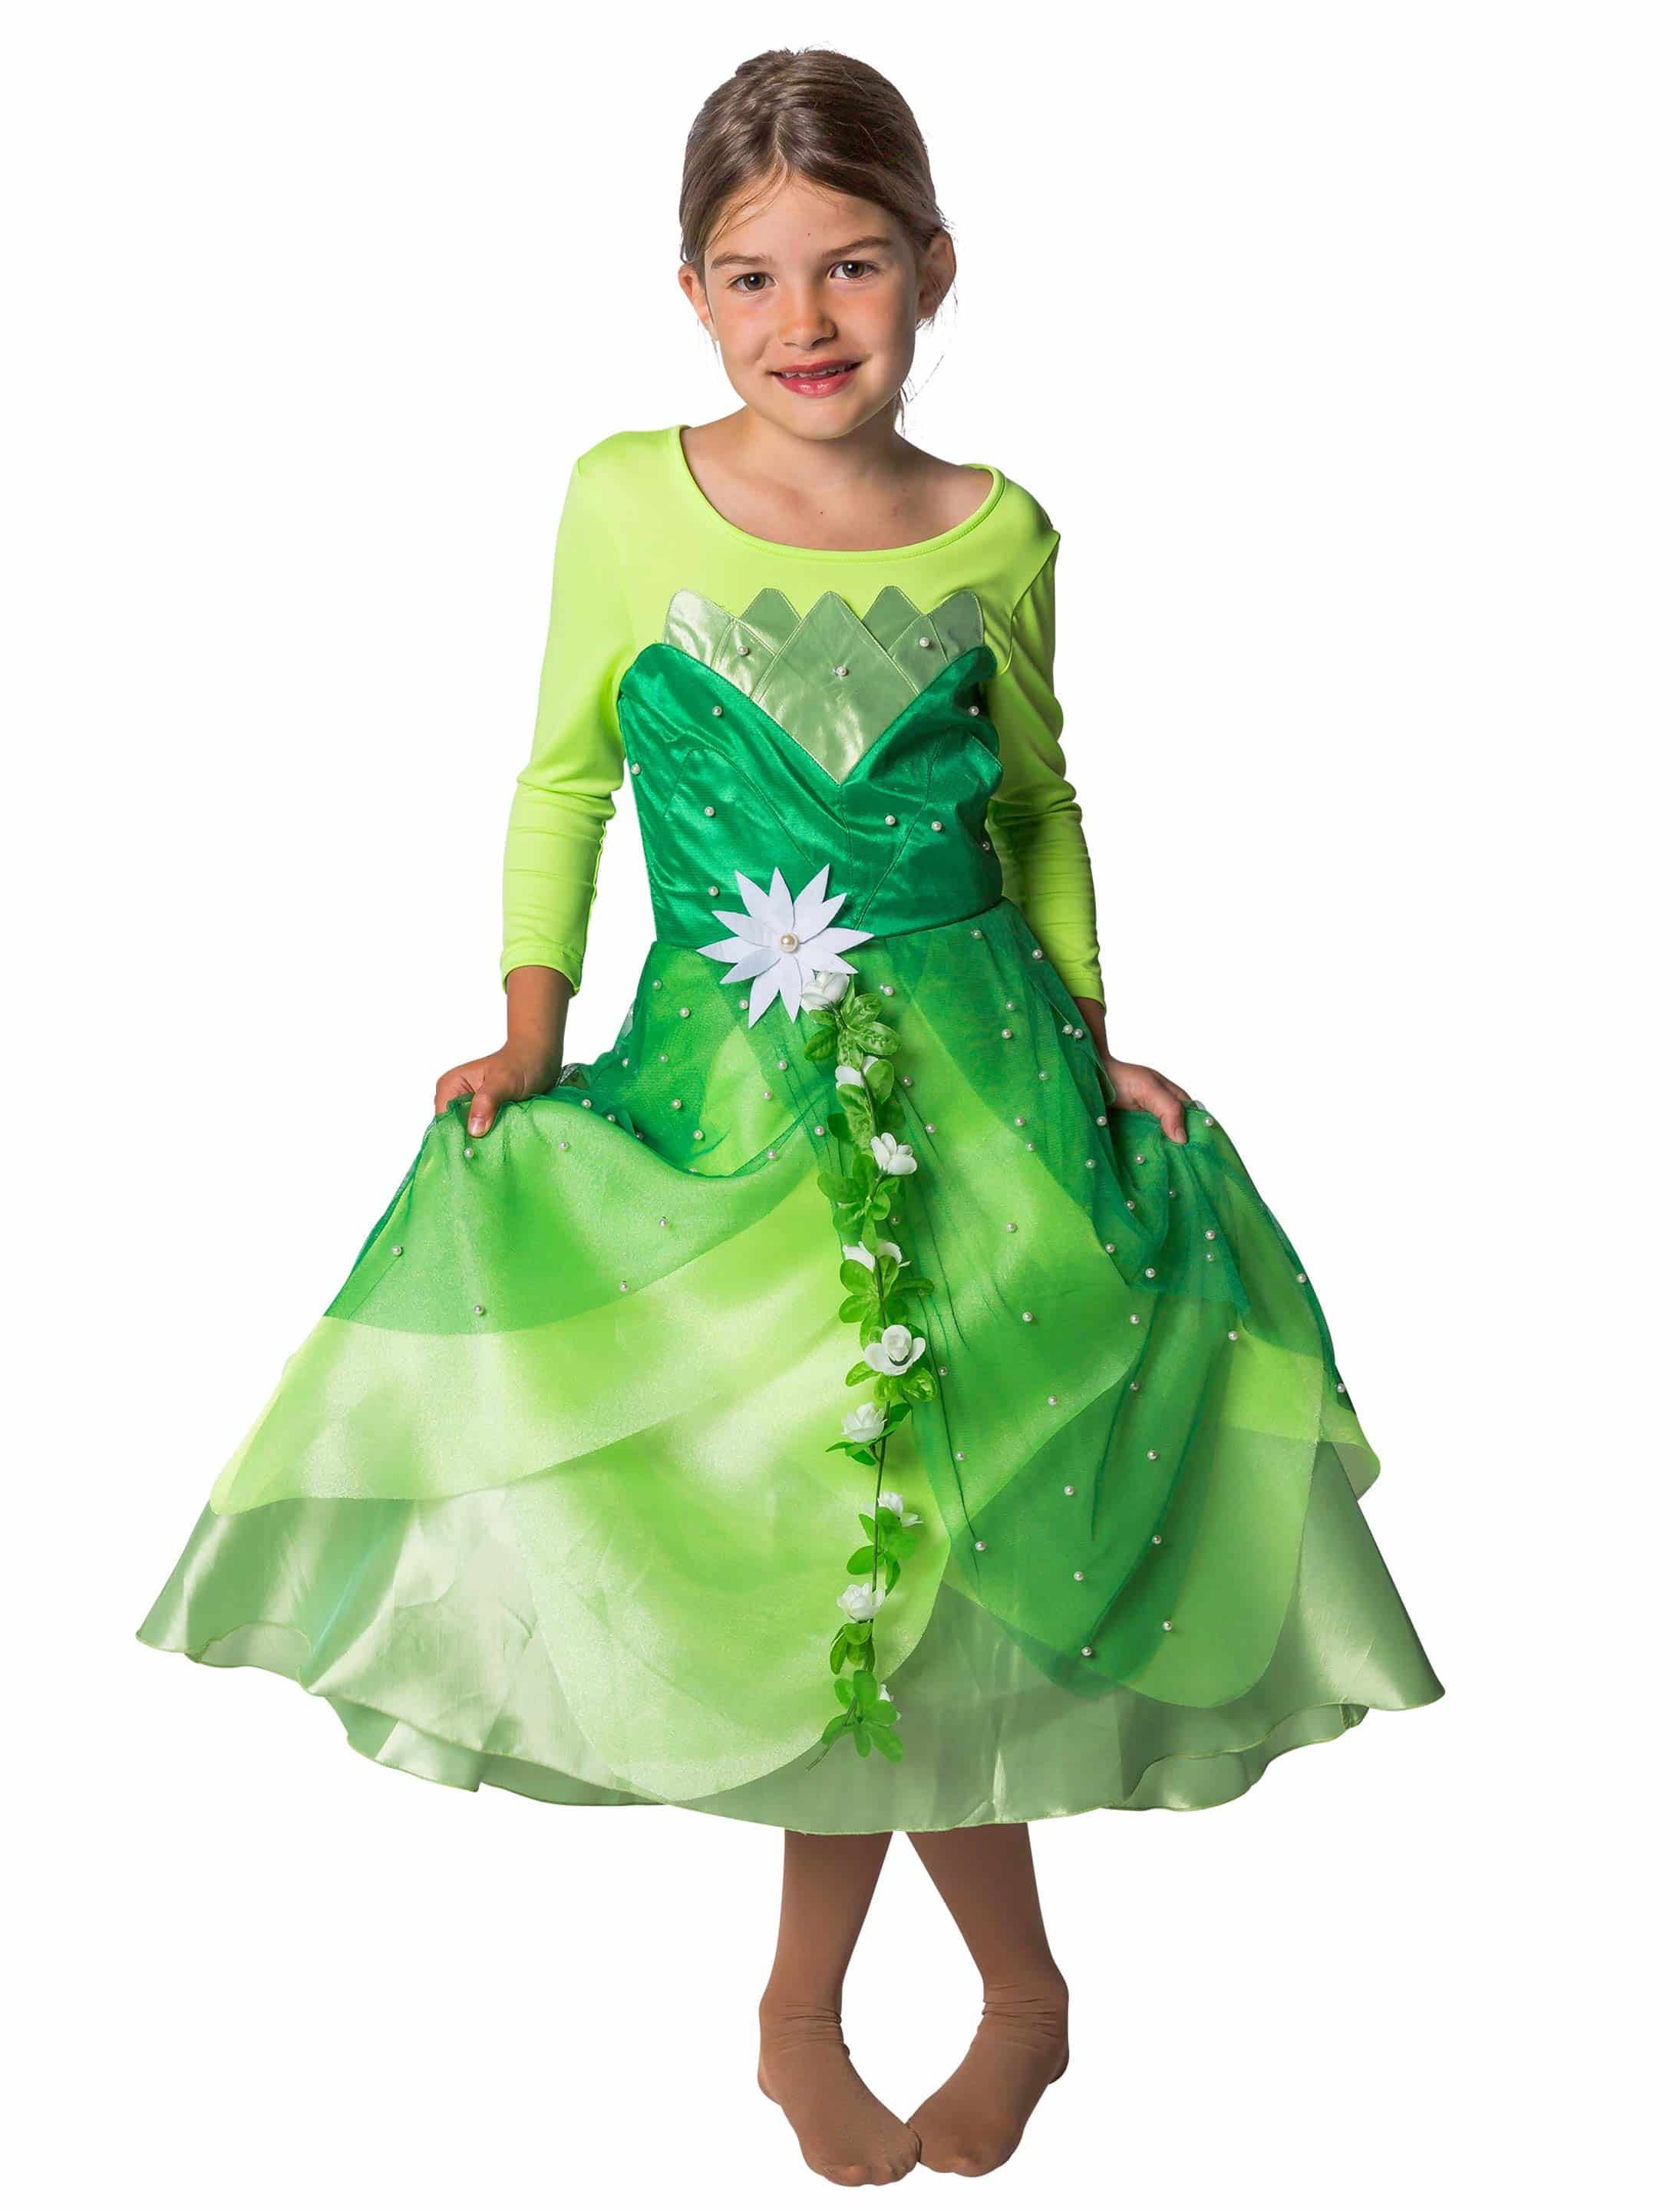 Kleid Froschkönigin Kinder grün 116